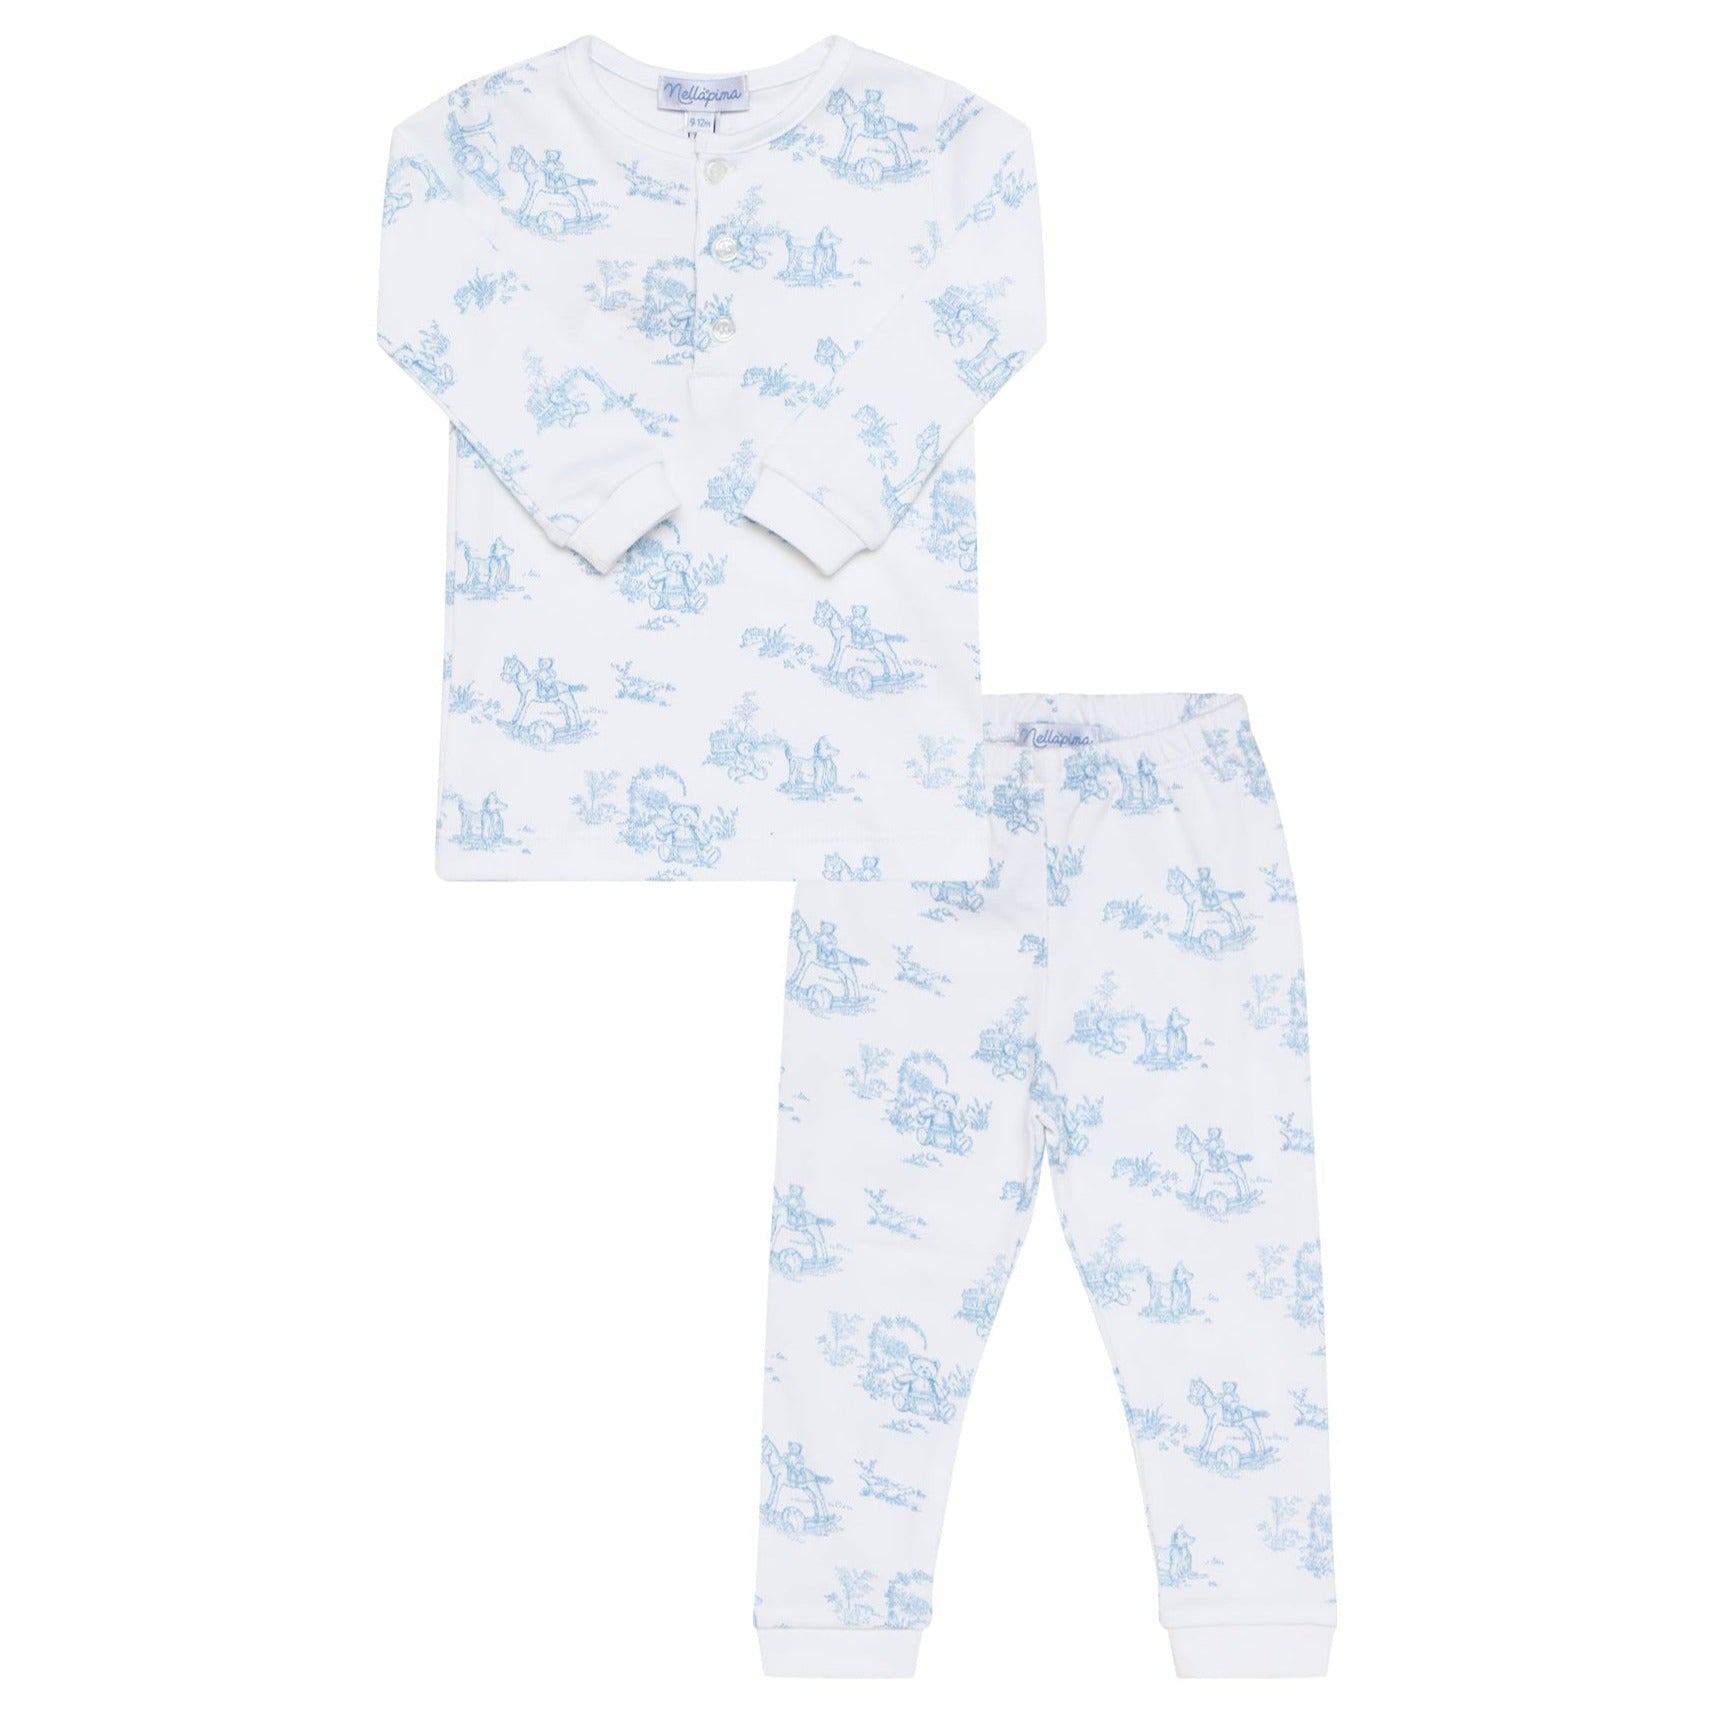 Blue Toile Baby Pajamas - HoneyBug 